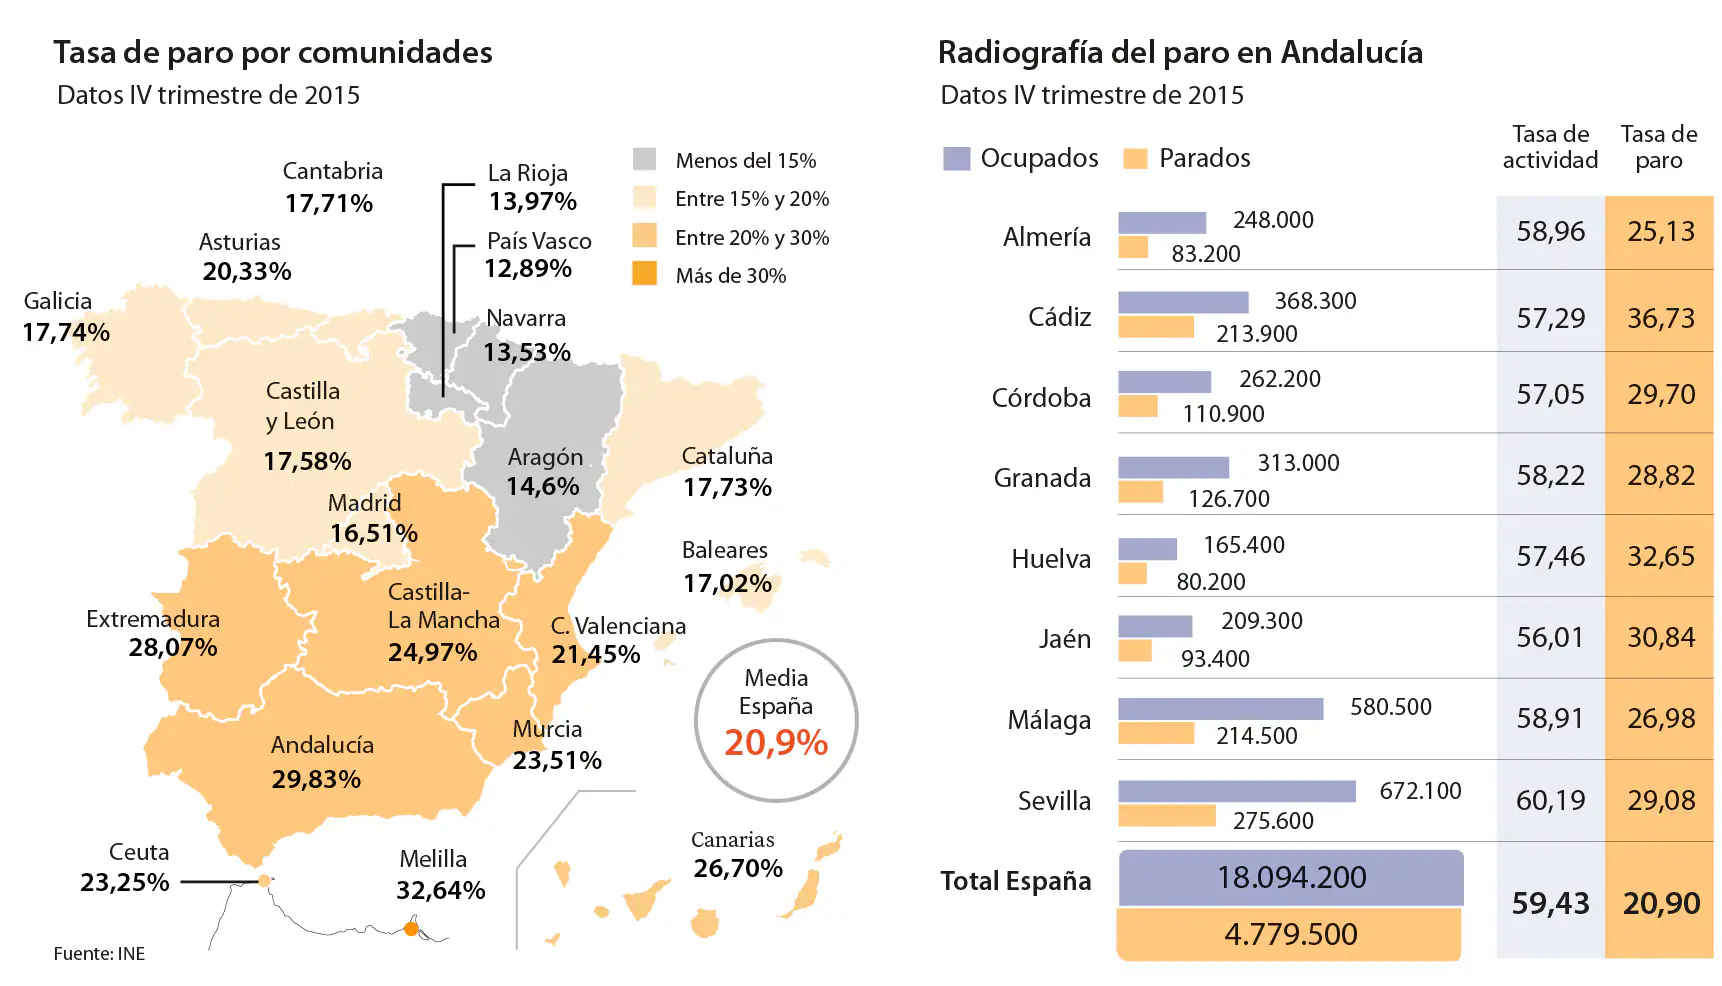 Tasa de paro por comunidades y radiogradía del paro en Andalucía